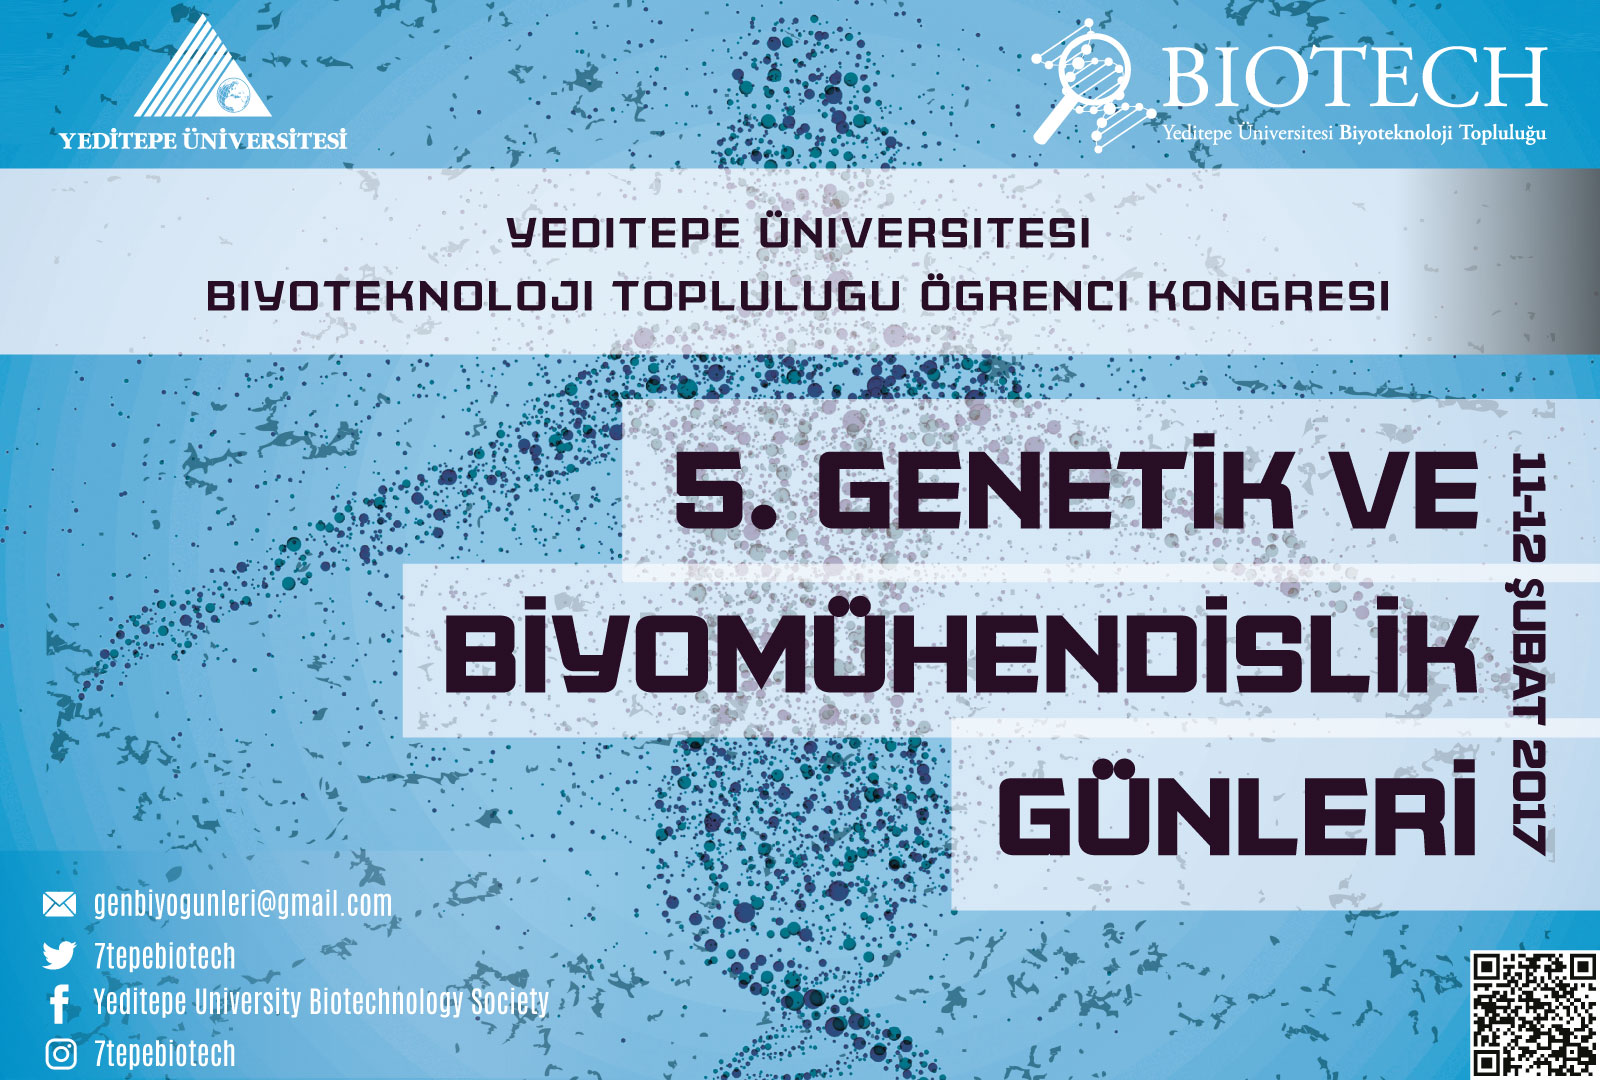 5.Genetik ve Biyomühendislik Günleri